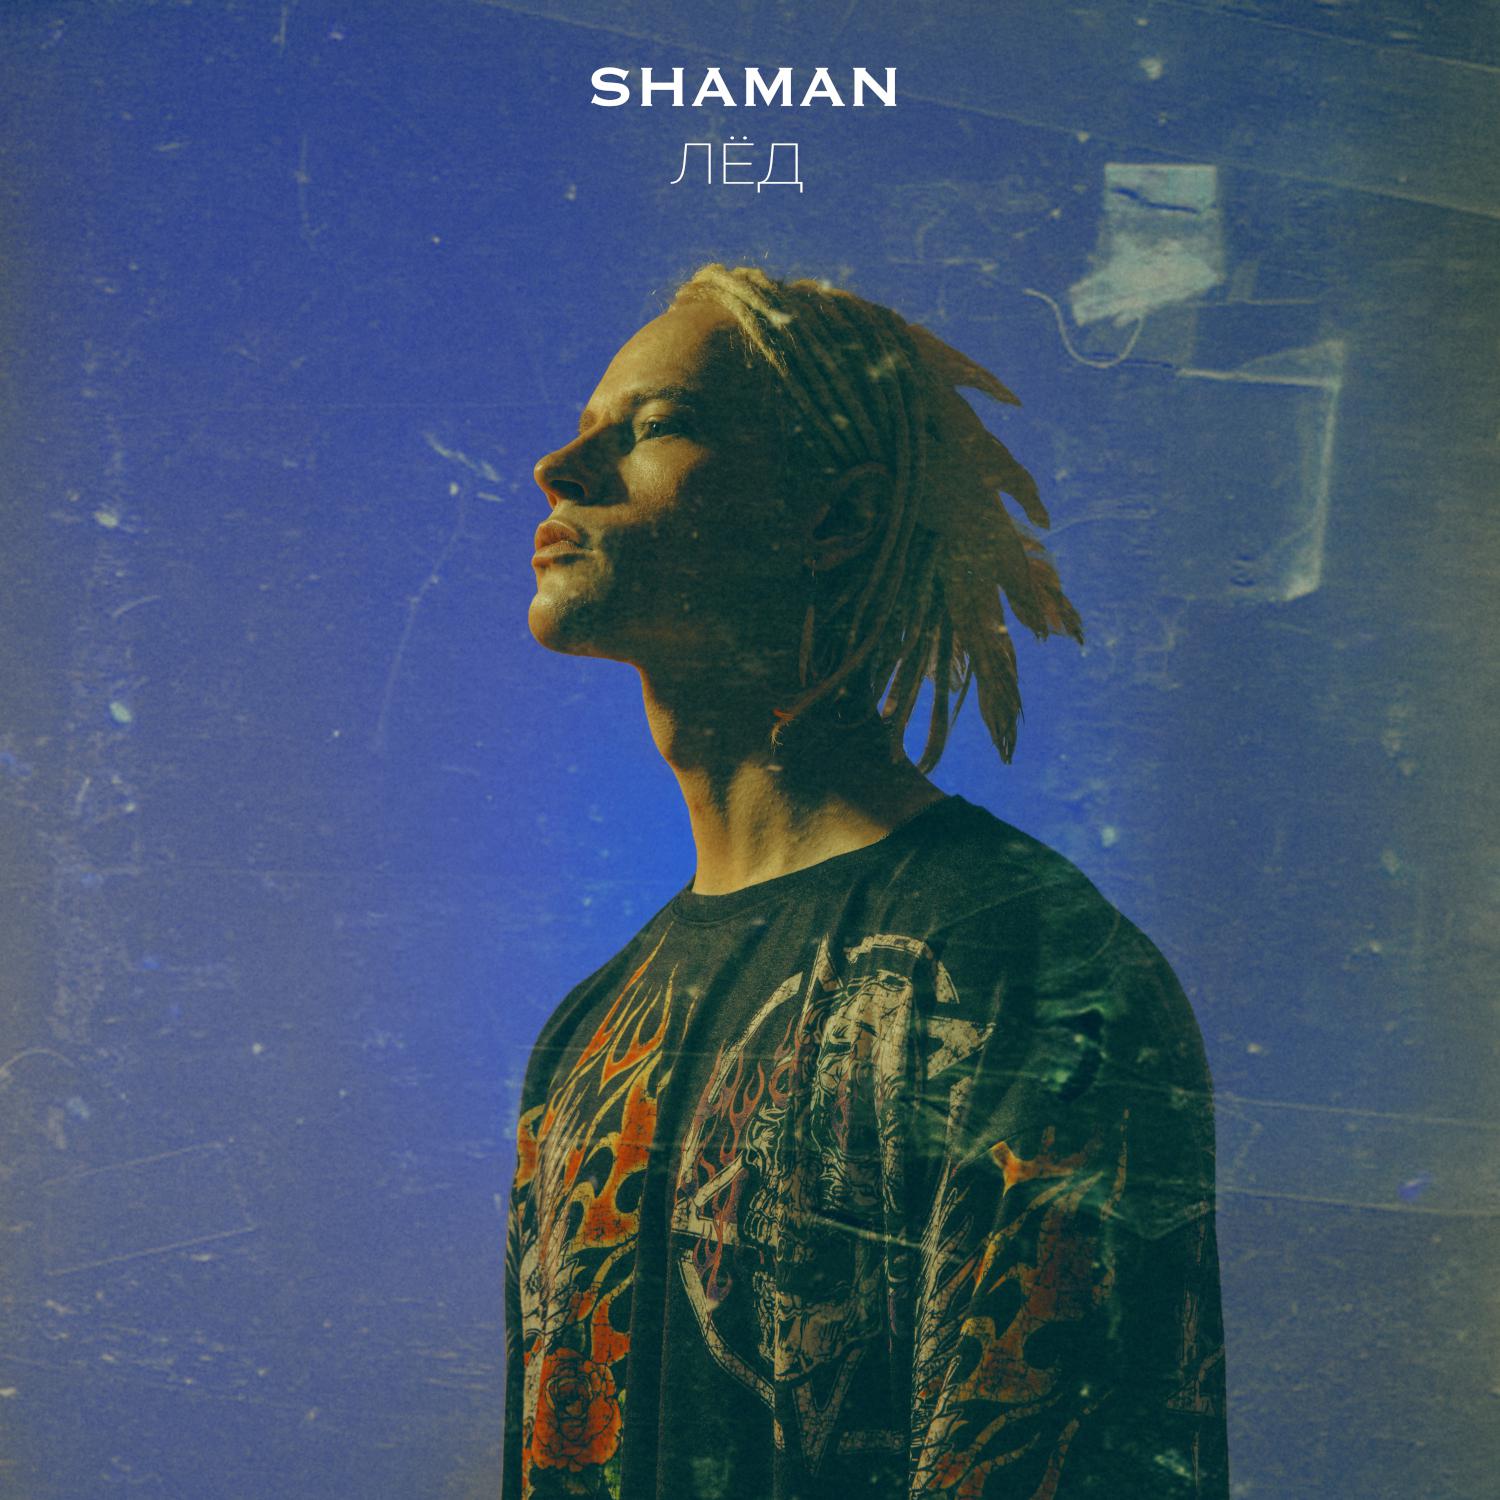 Послушать лучшие песни шамана. Shaman (певец). Shaman певец обложка. Shaman лед.